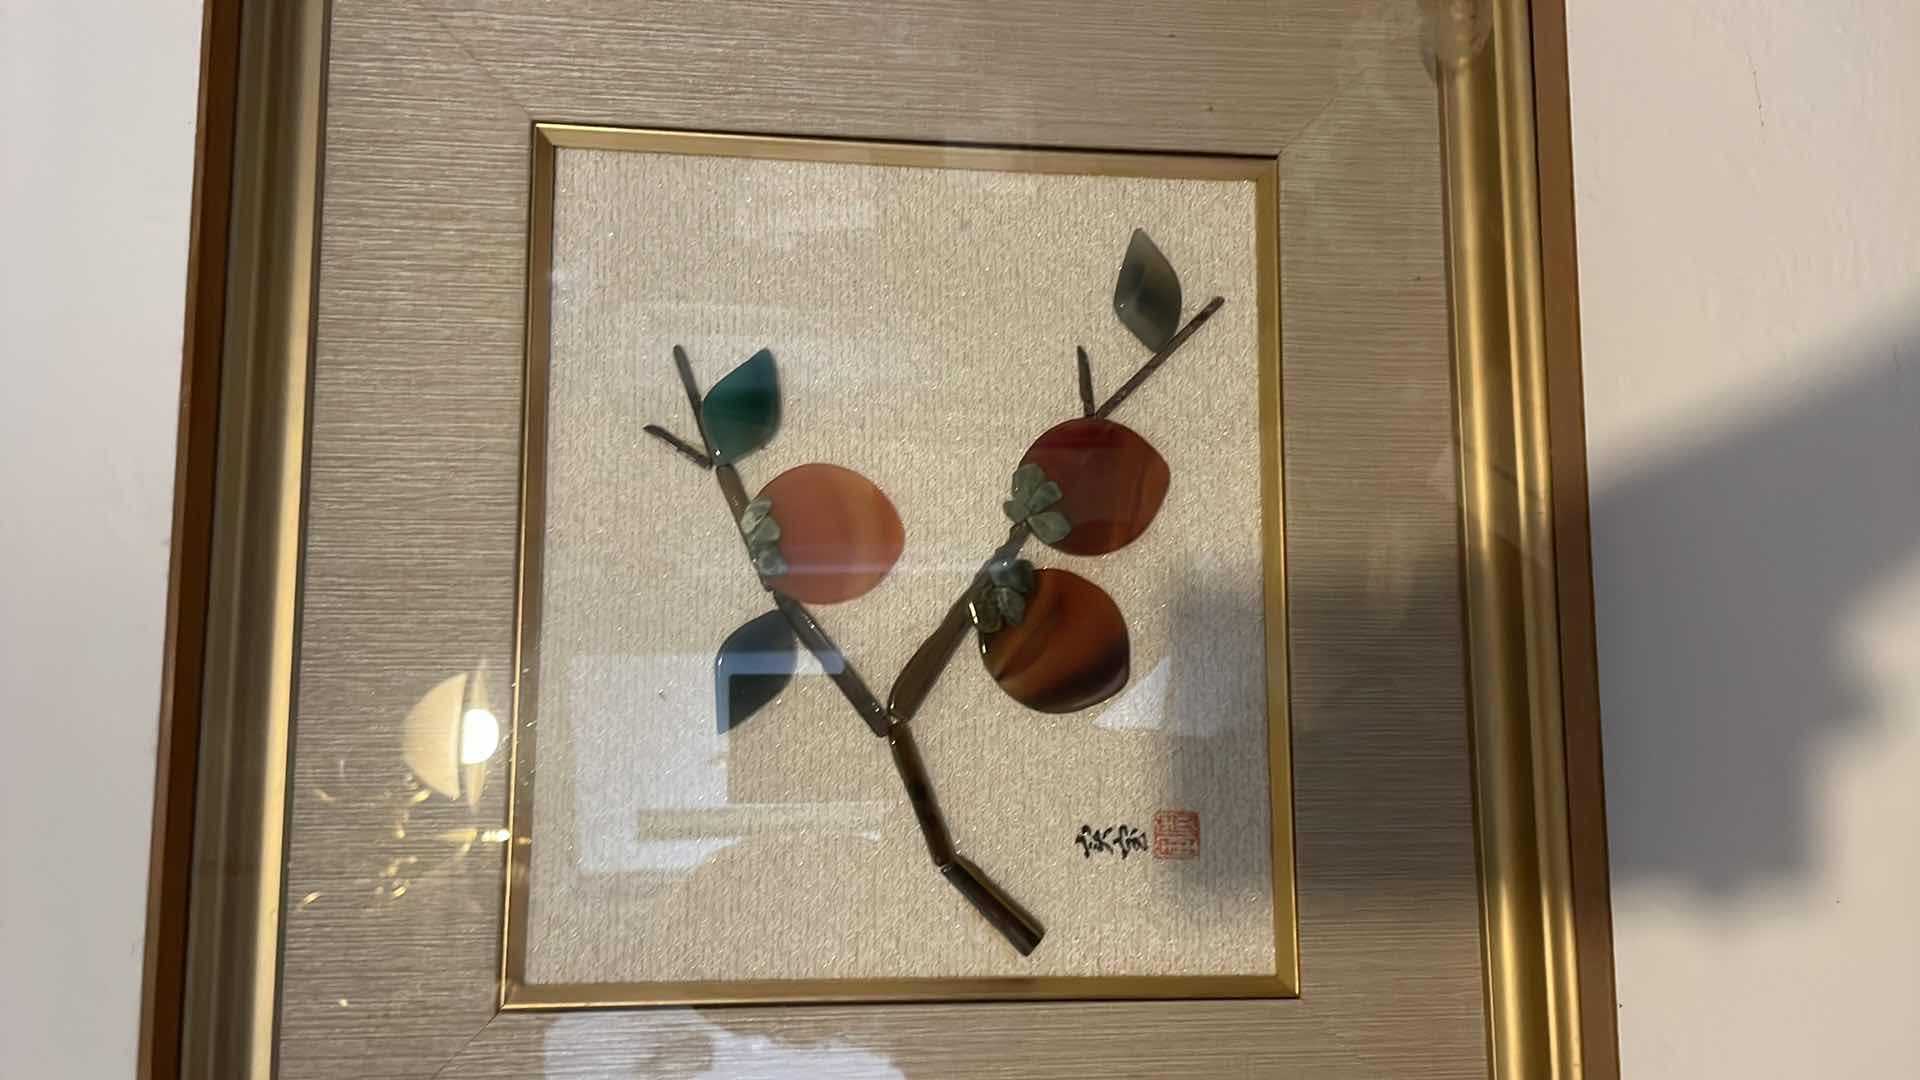 Photo 3 of GOLD FRAMED JAPANESE FRUIT GLASS ART 17”x17”